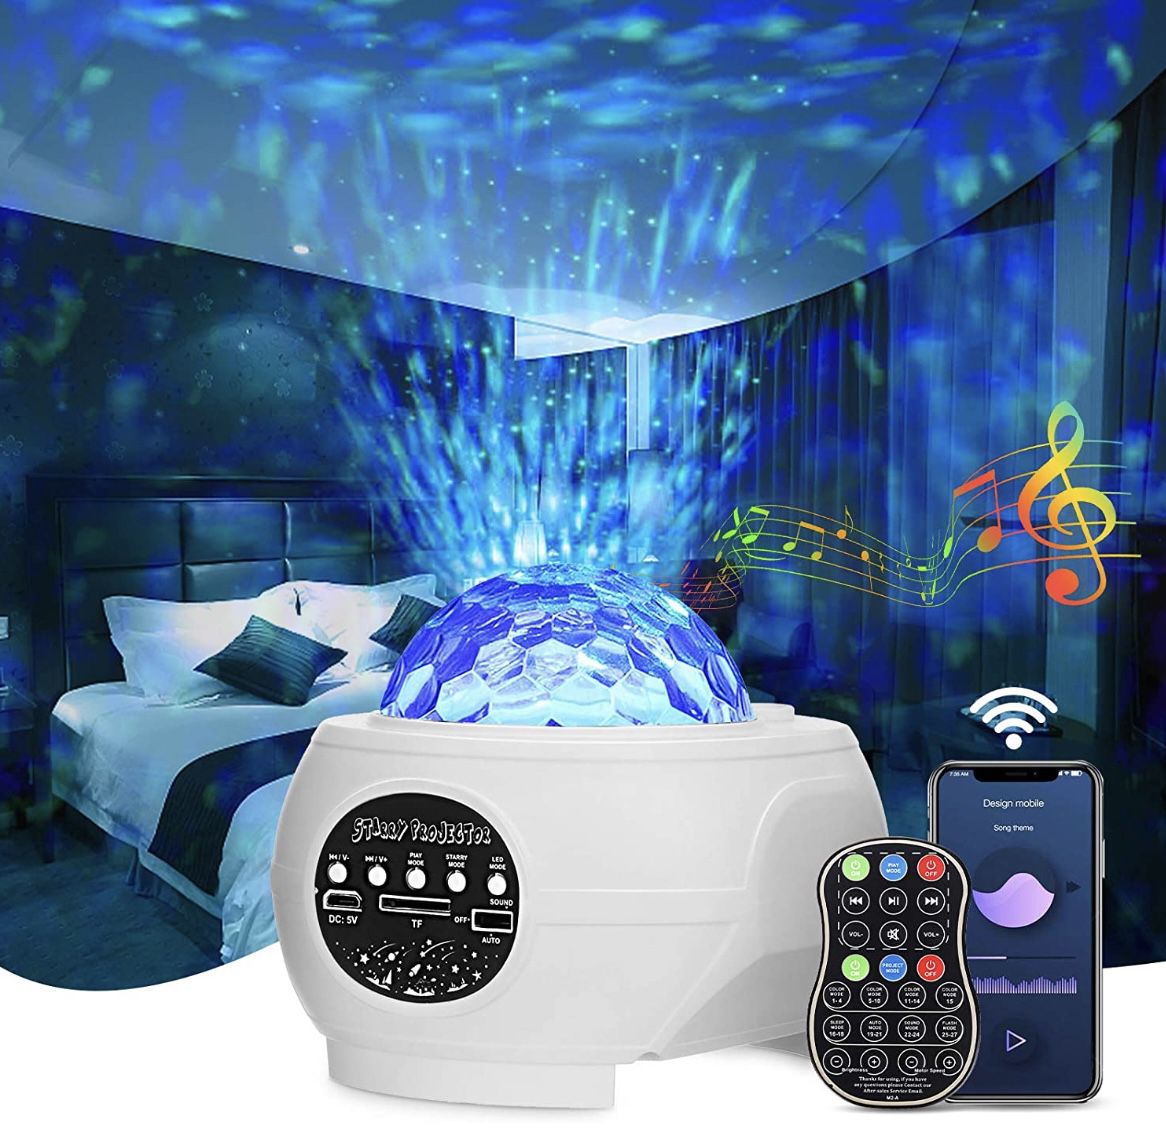 LED Sternenhimmel Projektor mit Musik & Rotierende Wasserwellen/Sternen für 16,49€ (statt 30€)